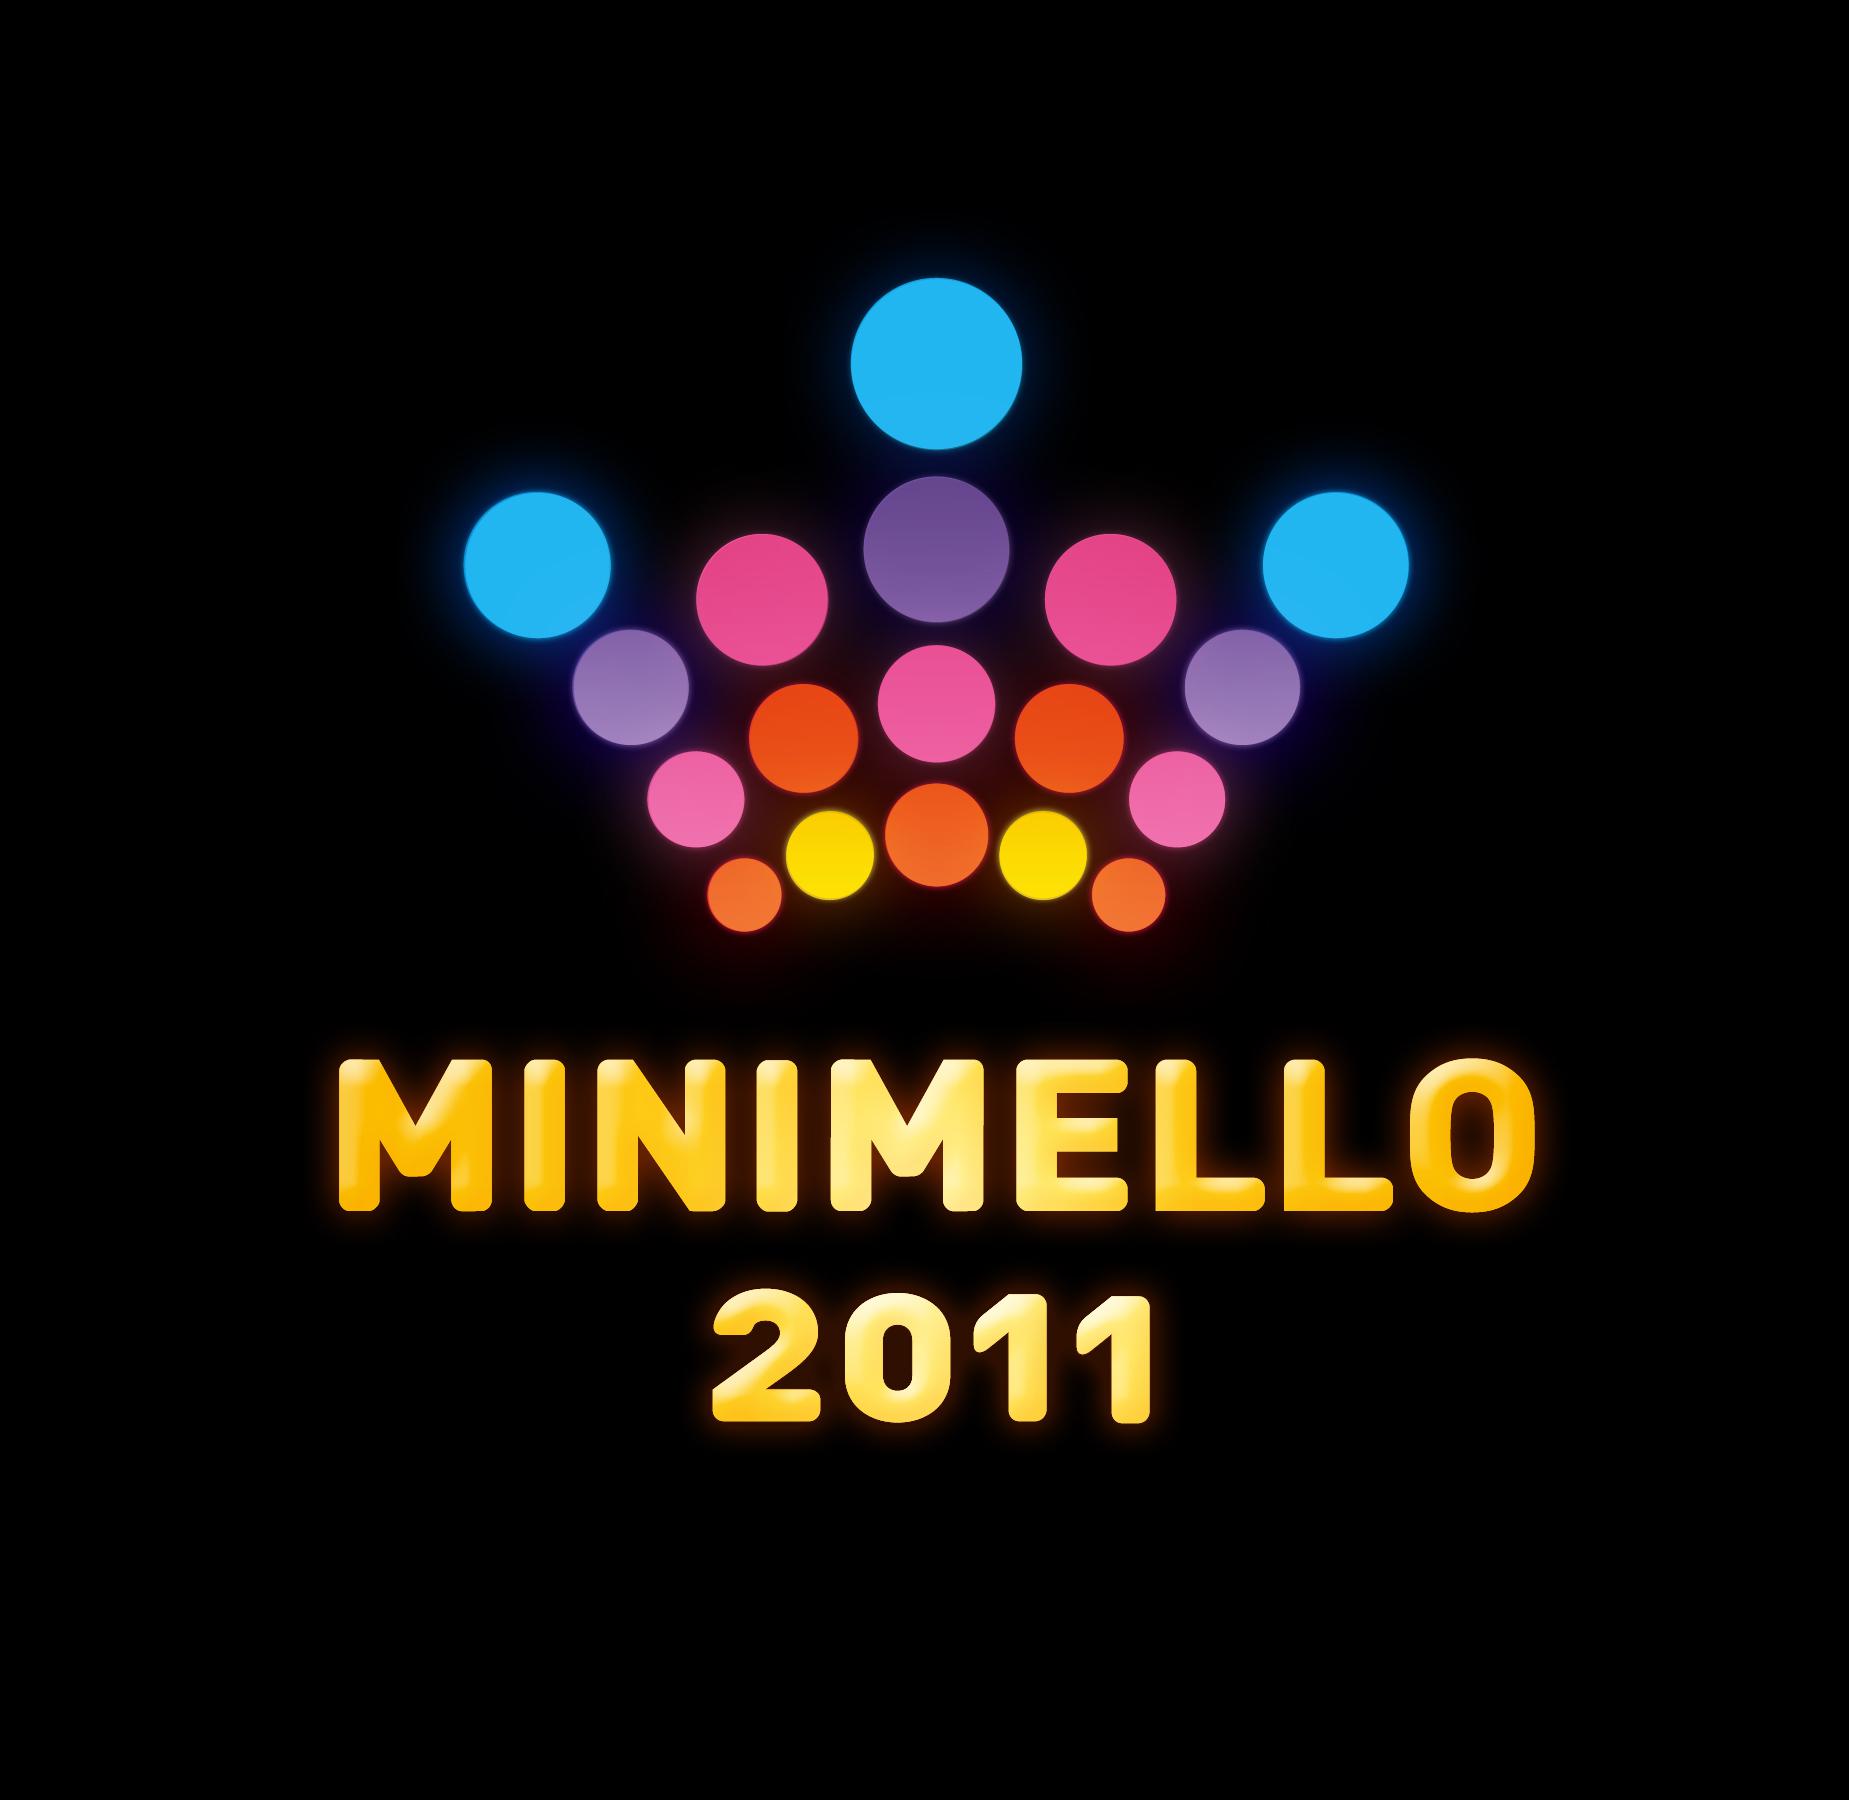 Minimello 2011